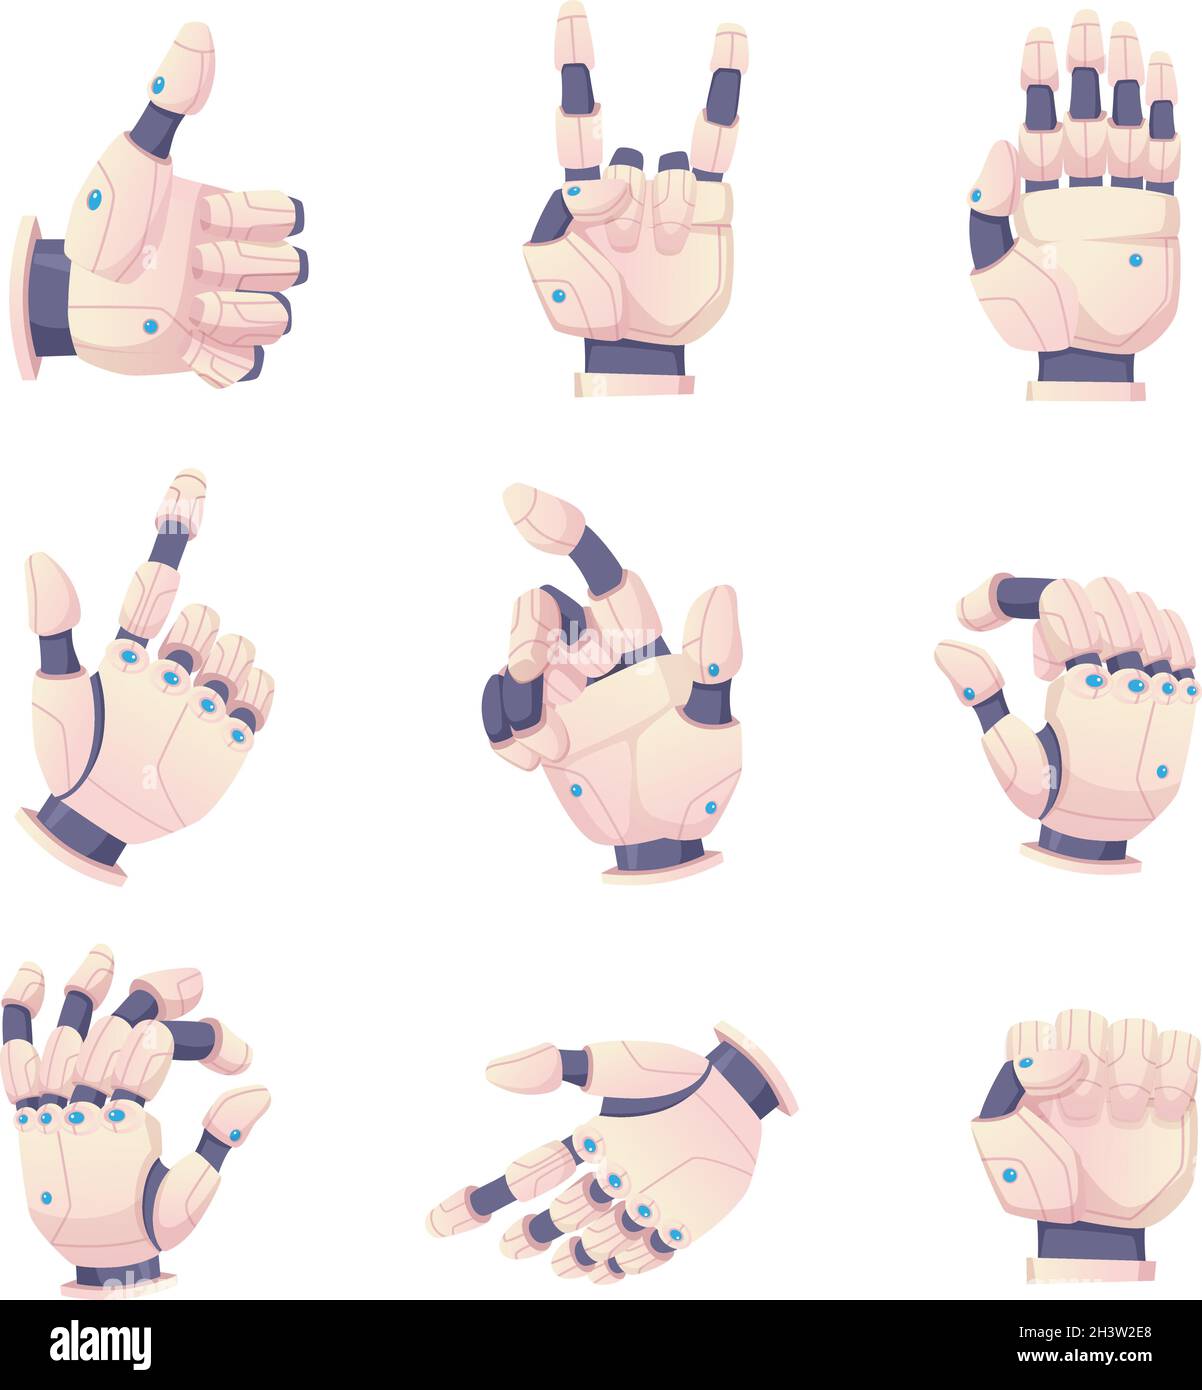 Bionische menschliche Hände. Roboter Gesten helfen Prothese Vektor-Set Stock Vektor